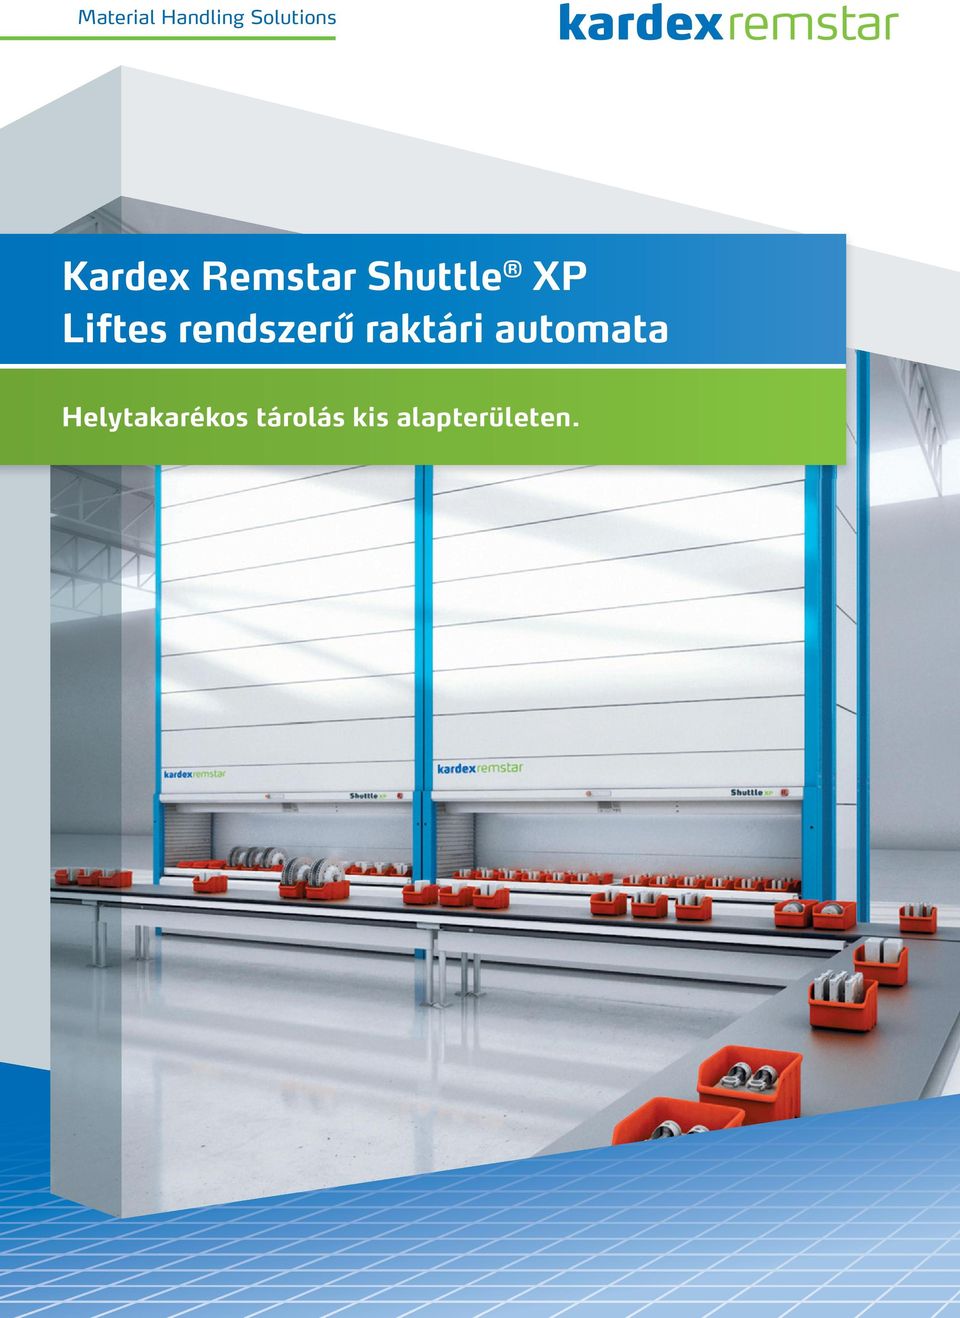 Kardex Remstar Shuttle XP Liftes rendszerű raktári automata Helytakarékos  tárolás kis alapterületen. - PDF Ingyenes letöltés